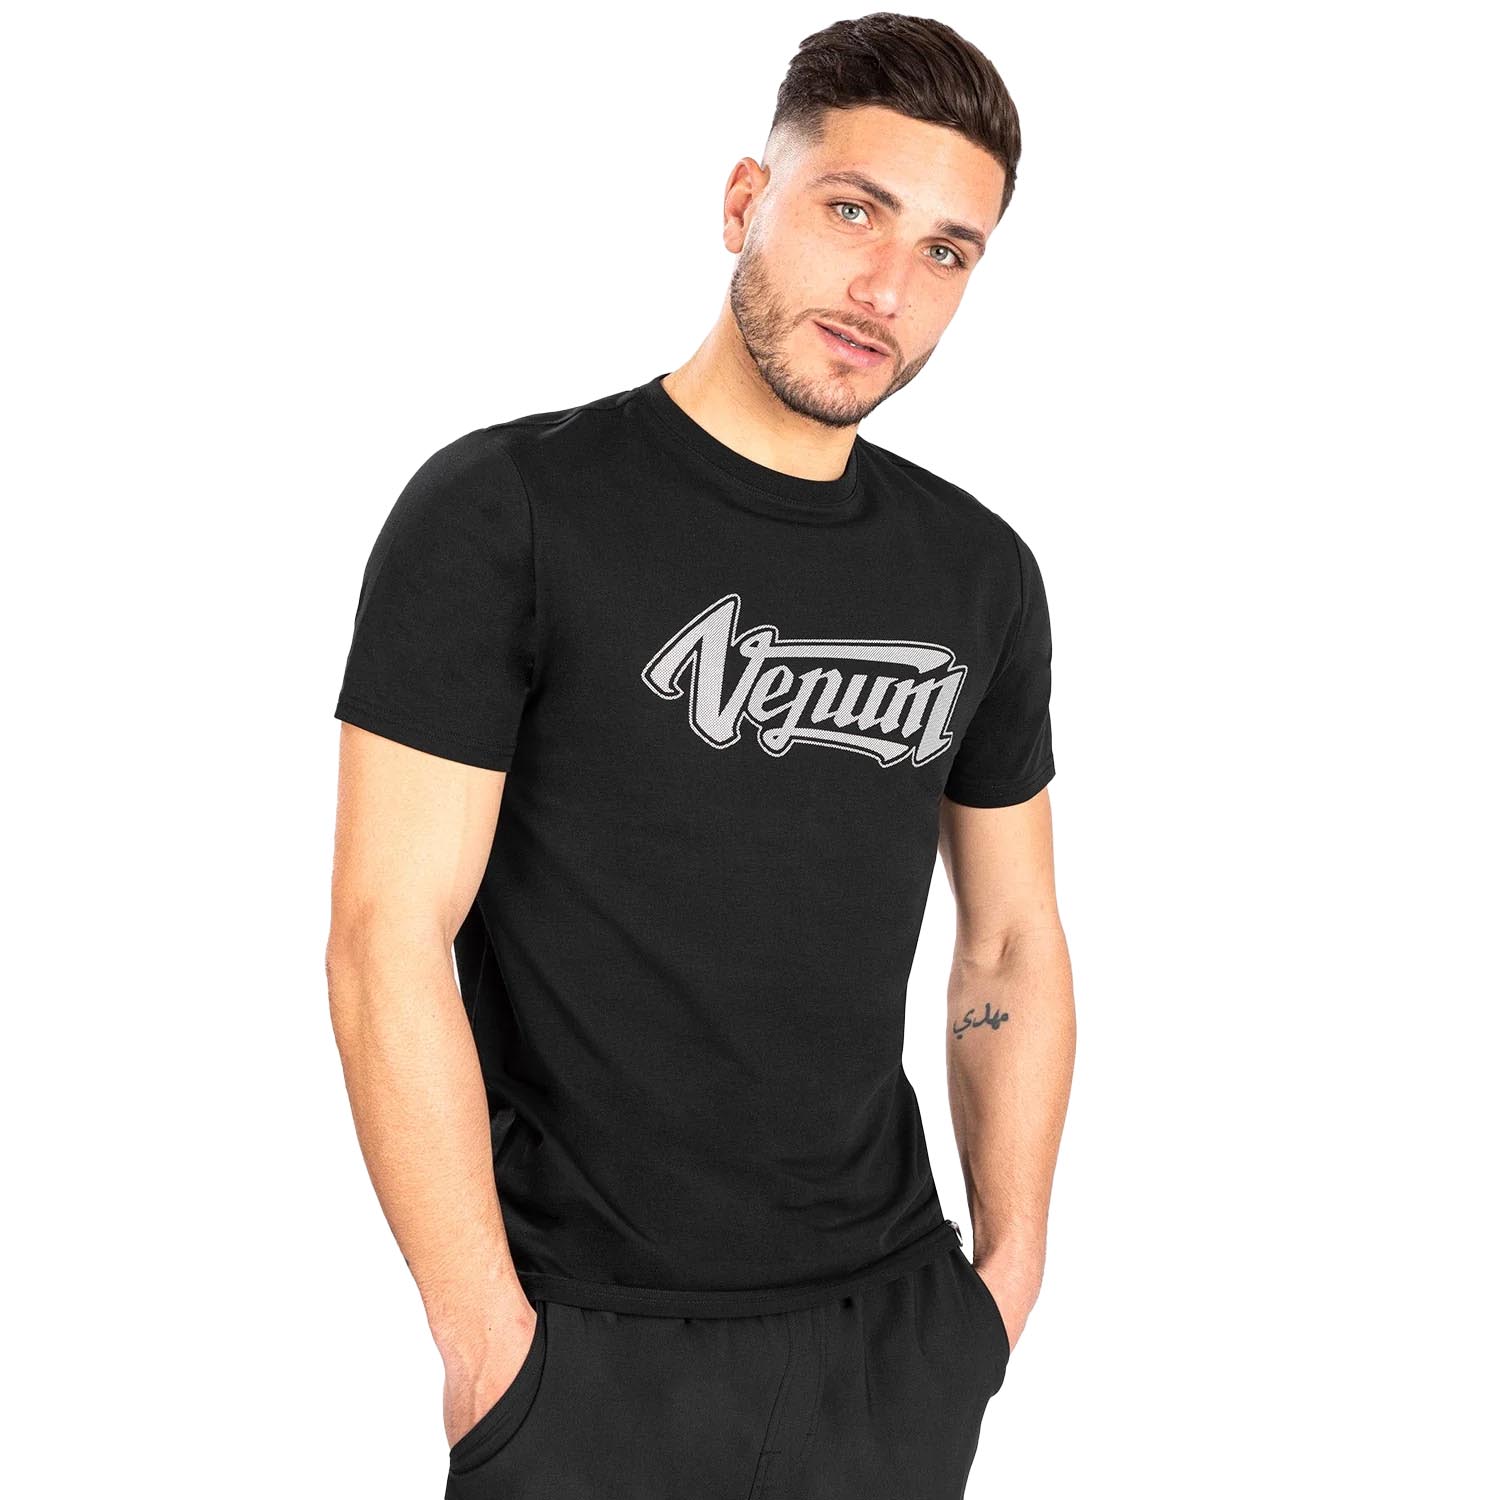 VENUM T-Shirt, Absolute 2.0, schwarz-silber, M